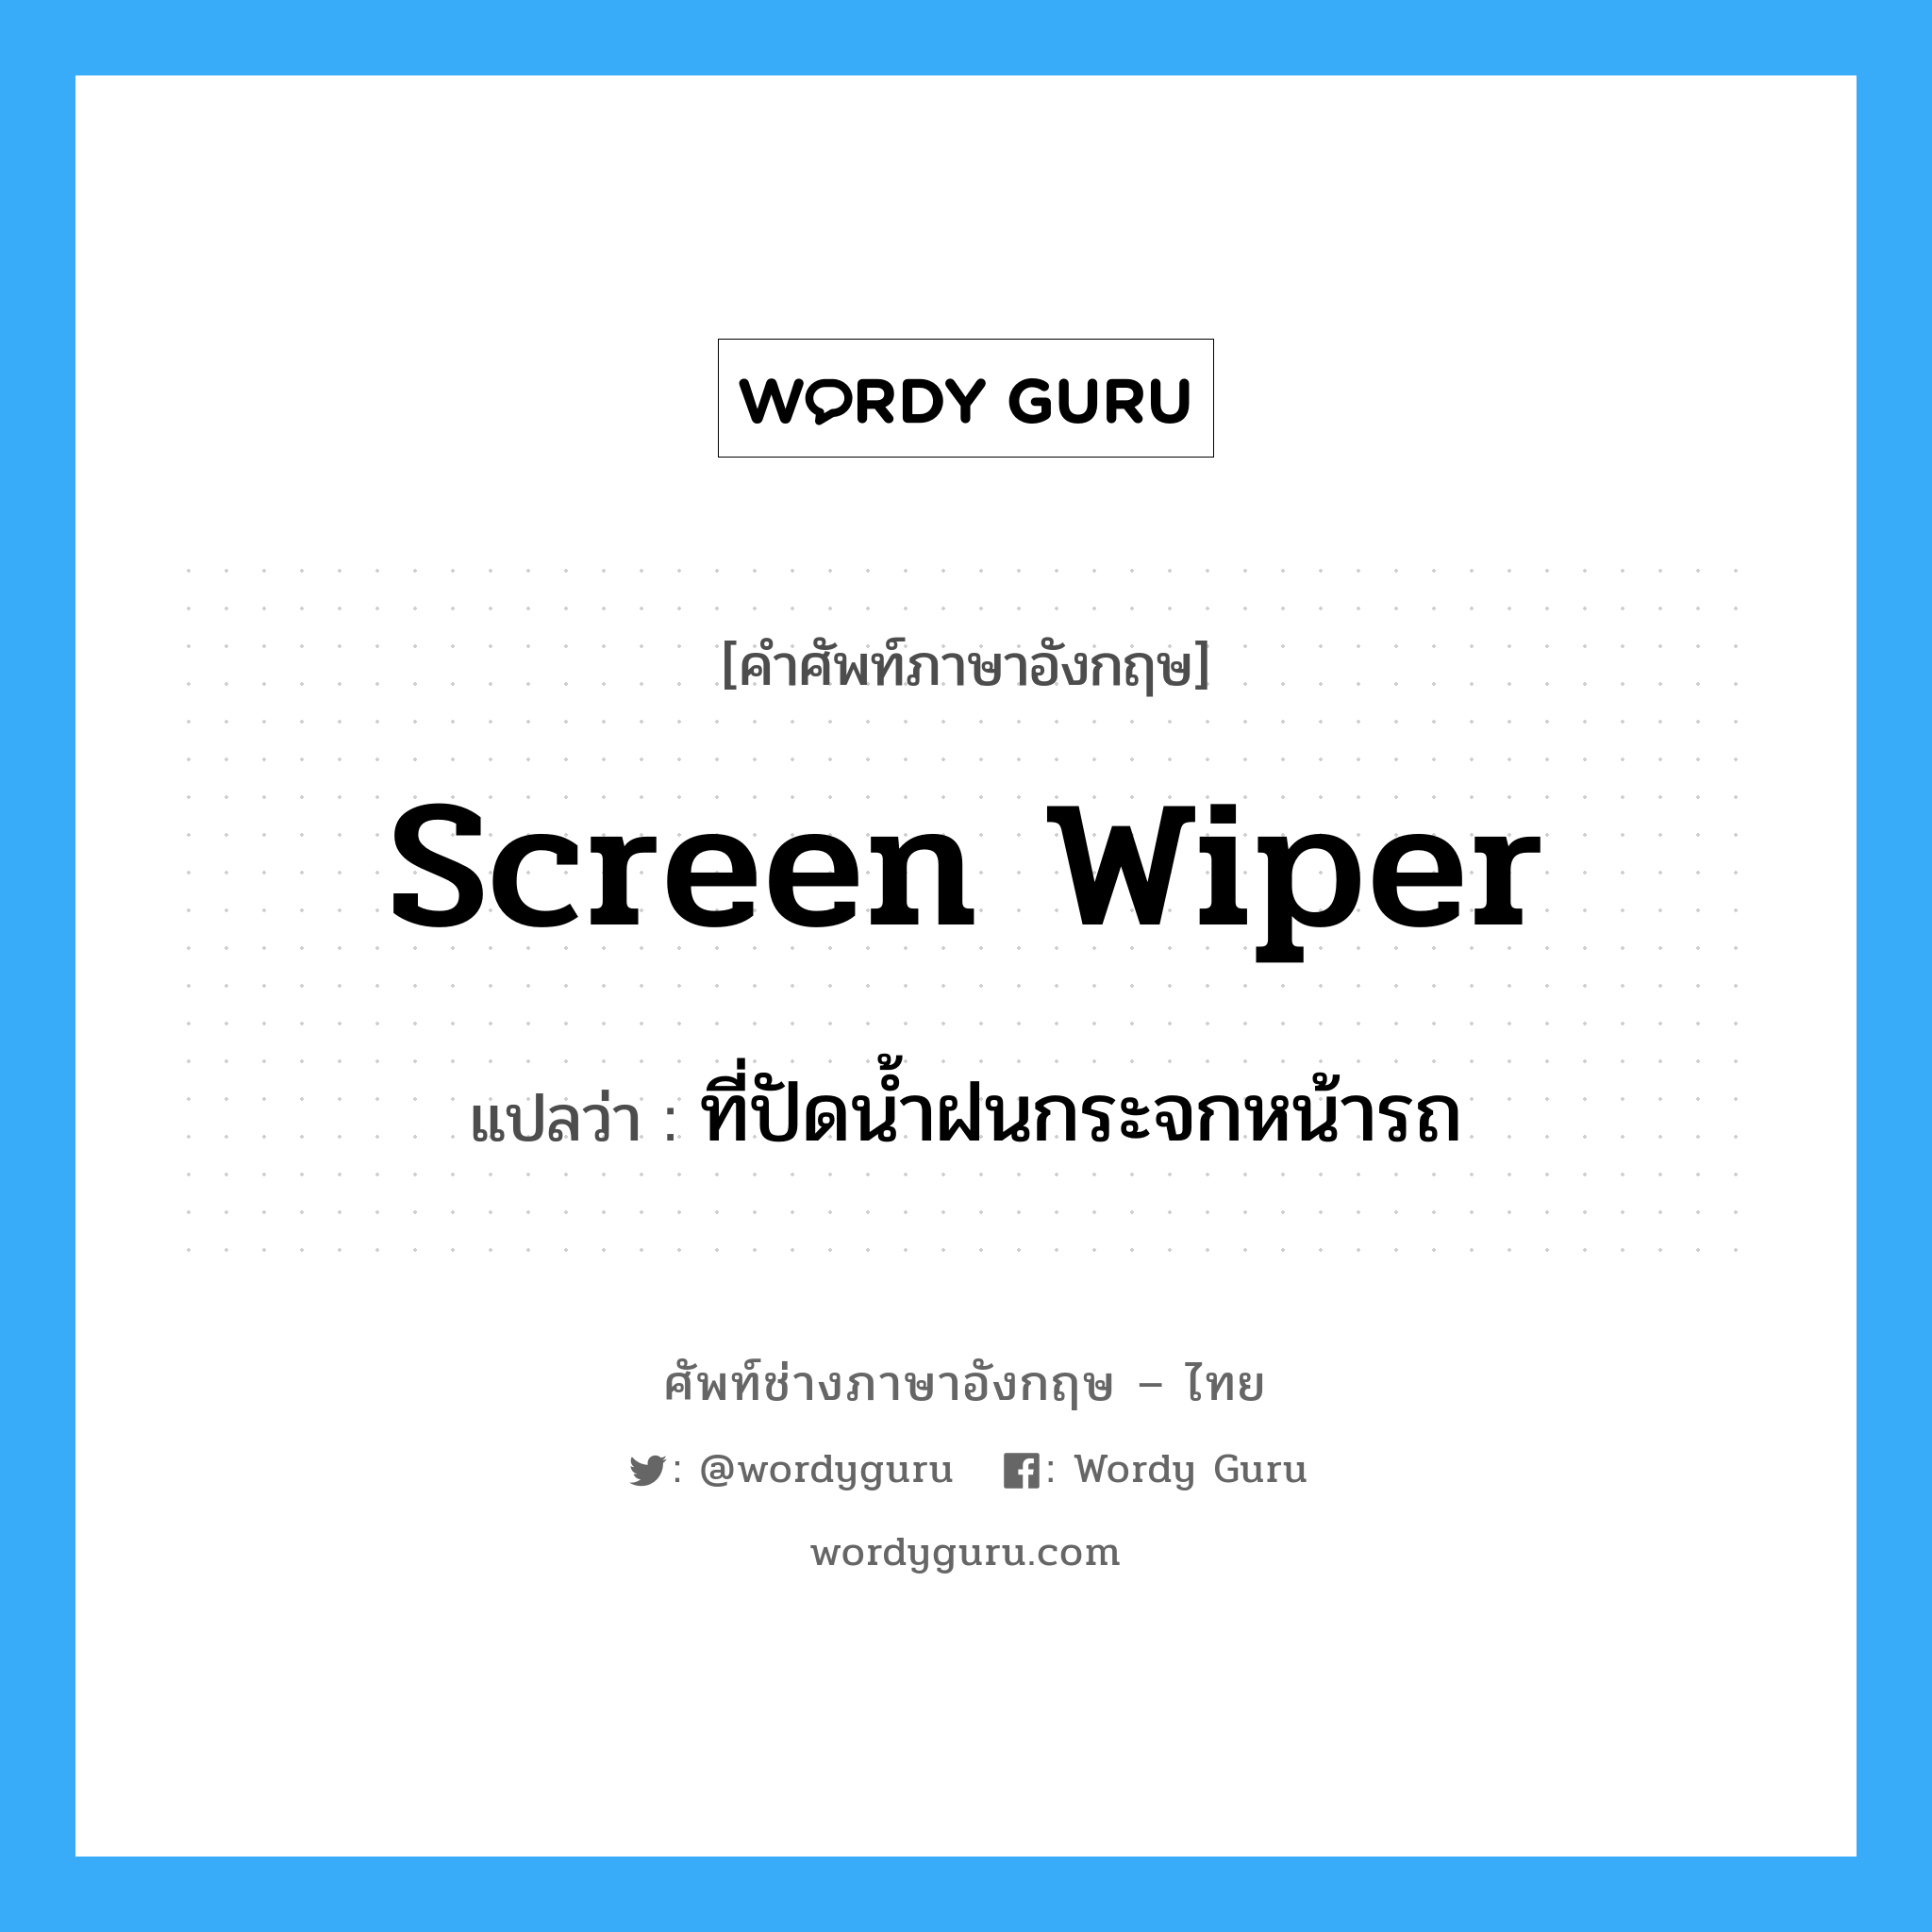 screen wiper แปลว่า?, คำศัพท์ช่างภาษาอังกฤษ - ไทย screen wiper คำศัพท์ภาษาอังกฤษ screen wiper แปลว่า ที่ปัดน้ำฝนกระจกหน้ารถ